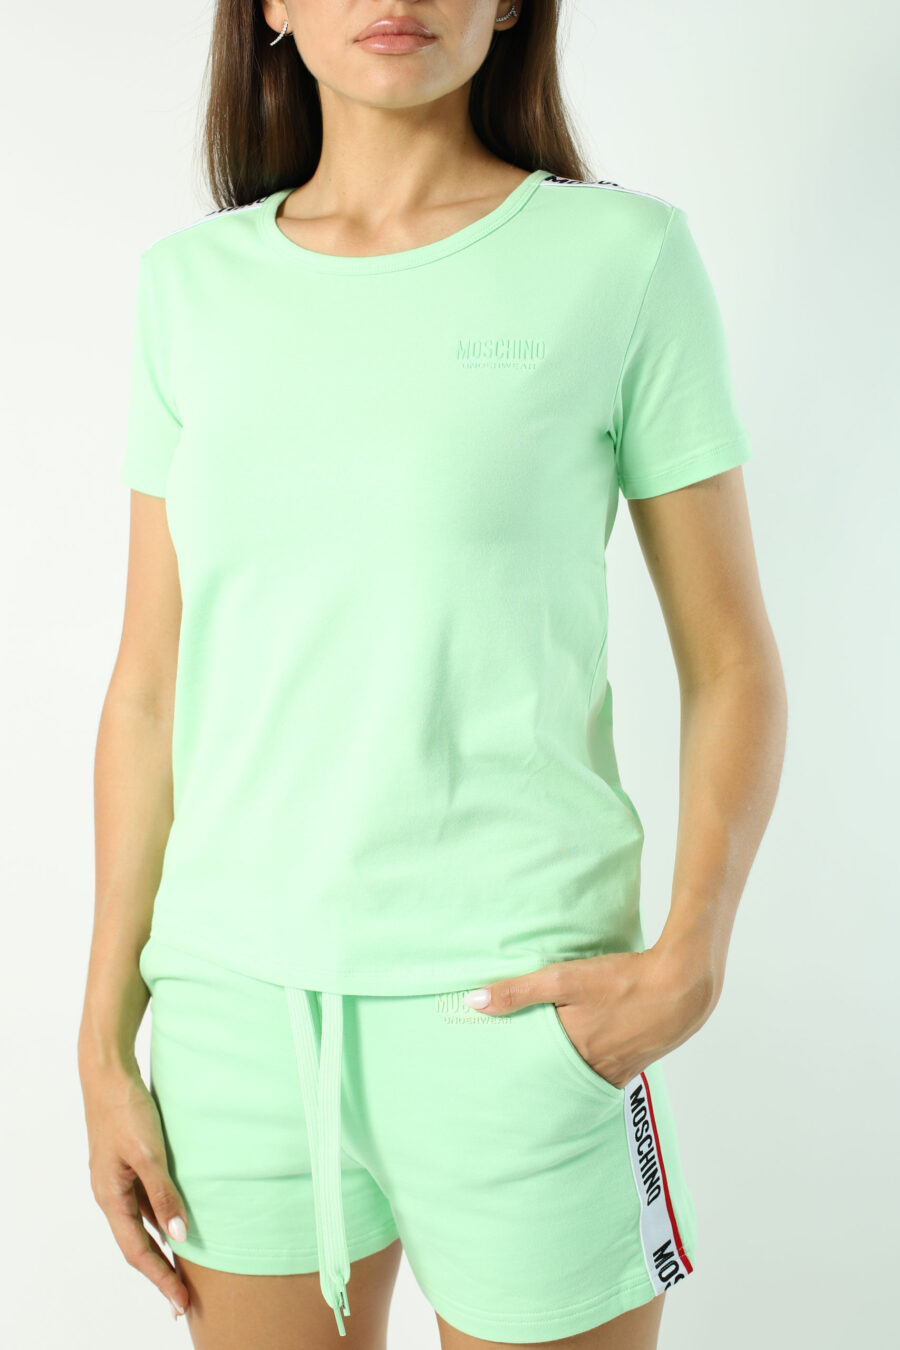 Mintgrünes, schmal geschnittenes T-Shirt mit Logoband an den Schultern - Fotos 2789